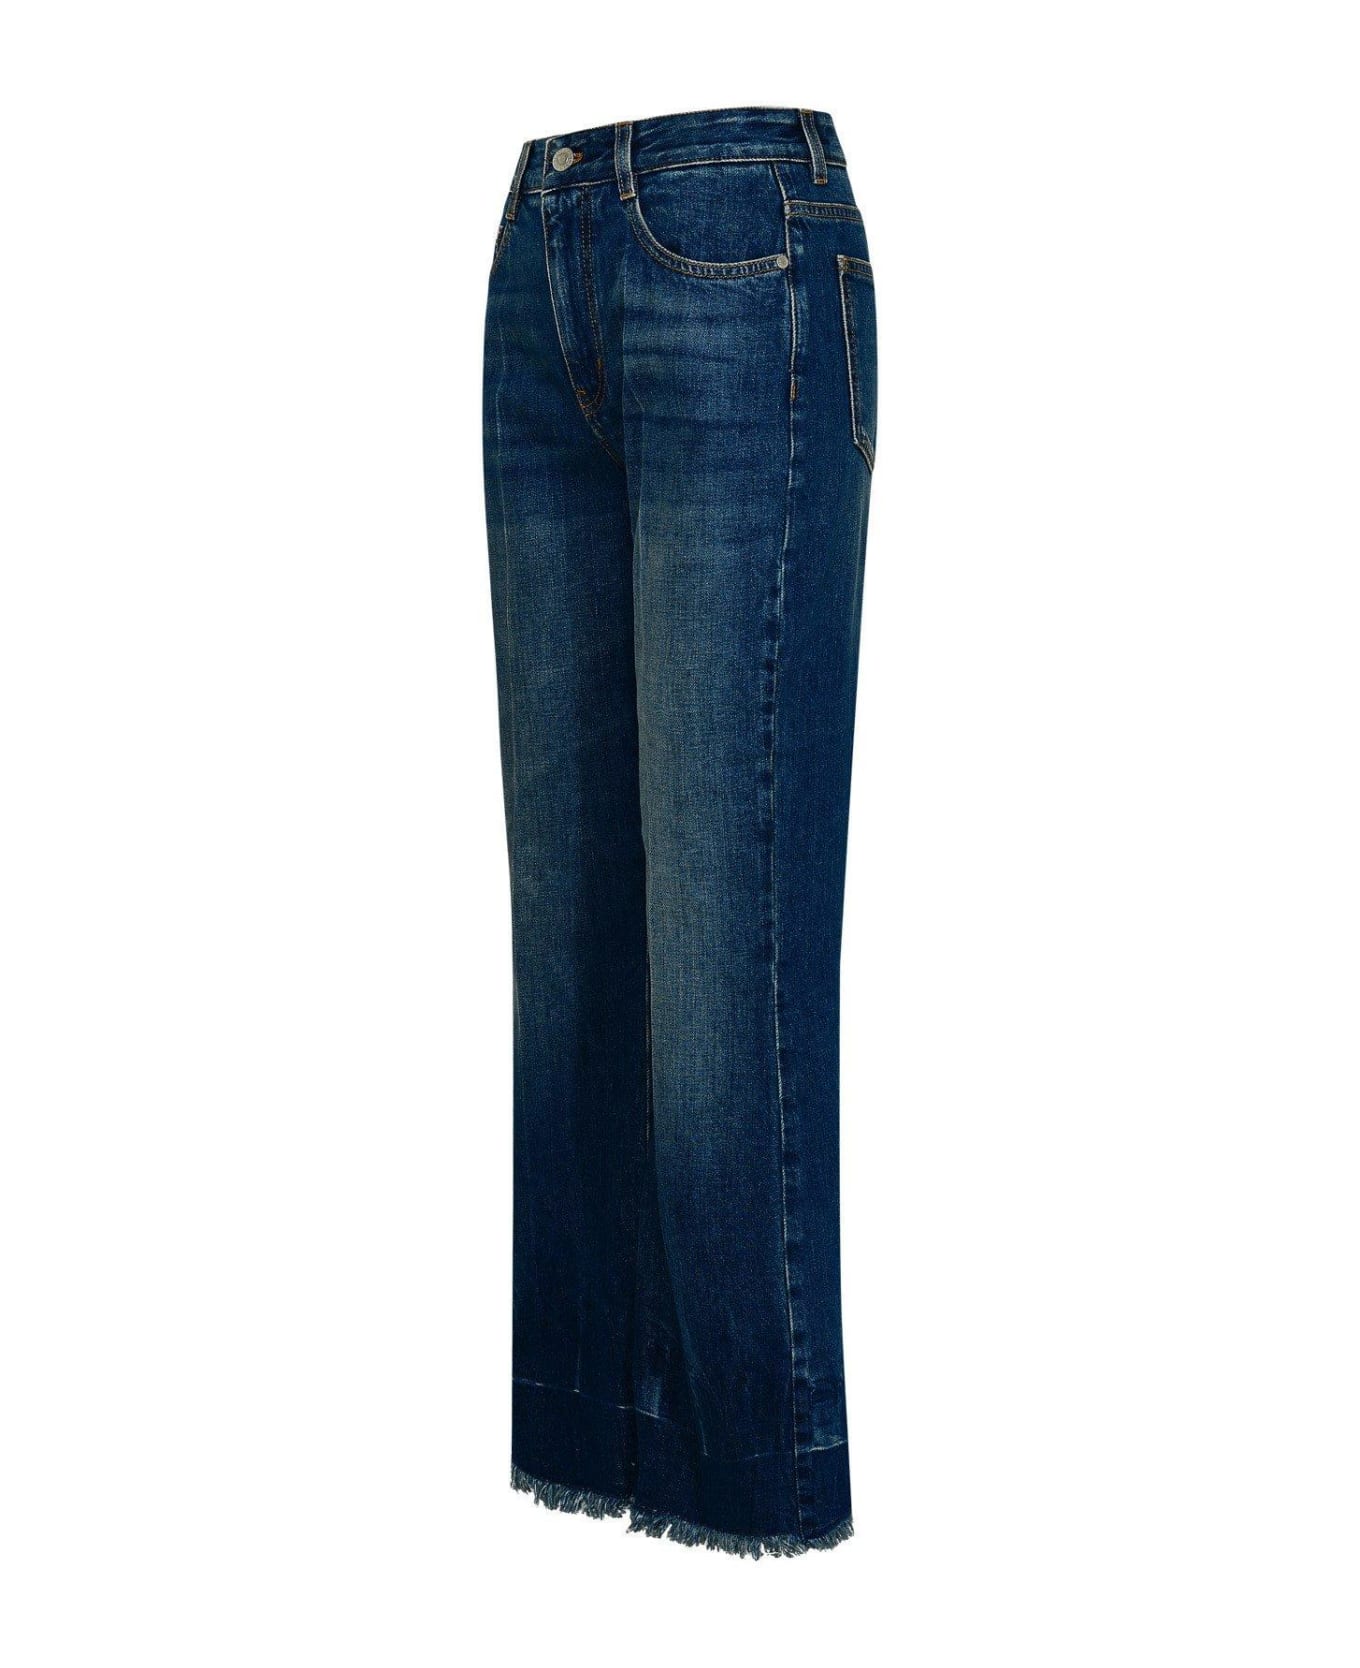 Stella McCartney Cropped Flared Jeans - Blu scuro